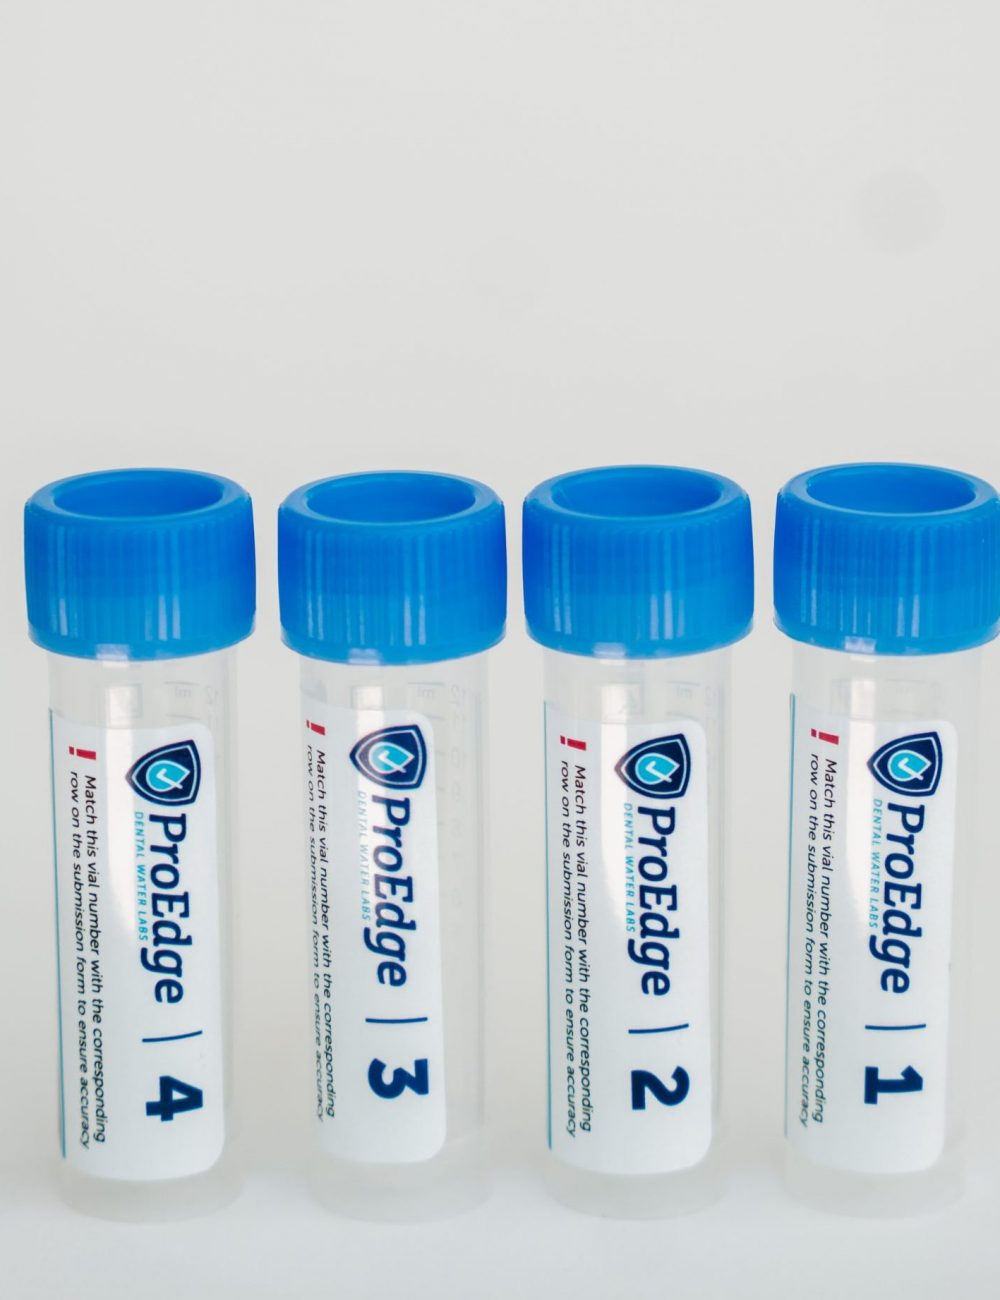 R2A or Flo waterline testing kit 4 water sample vials